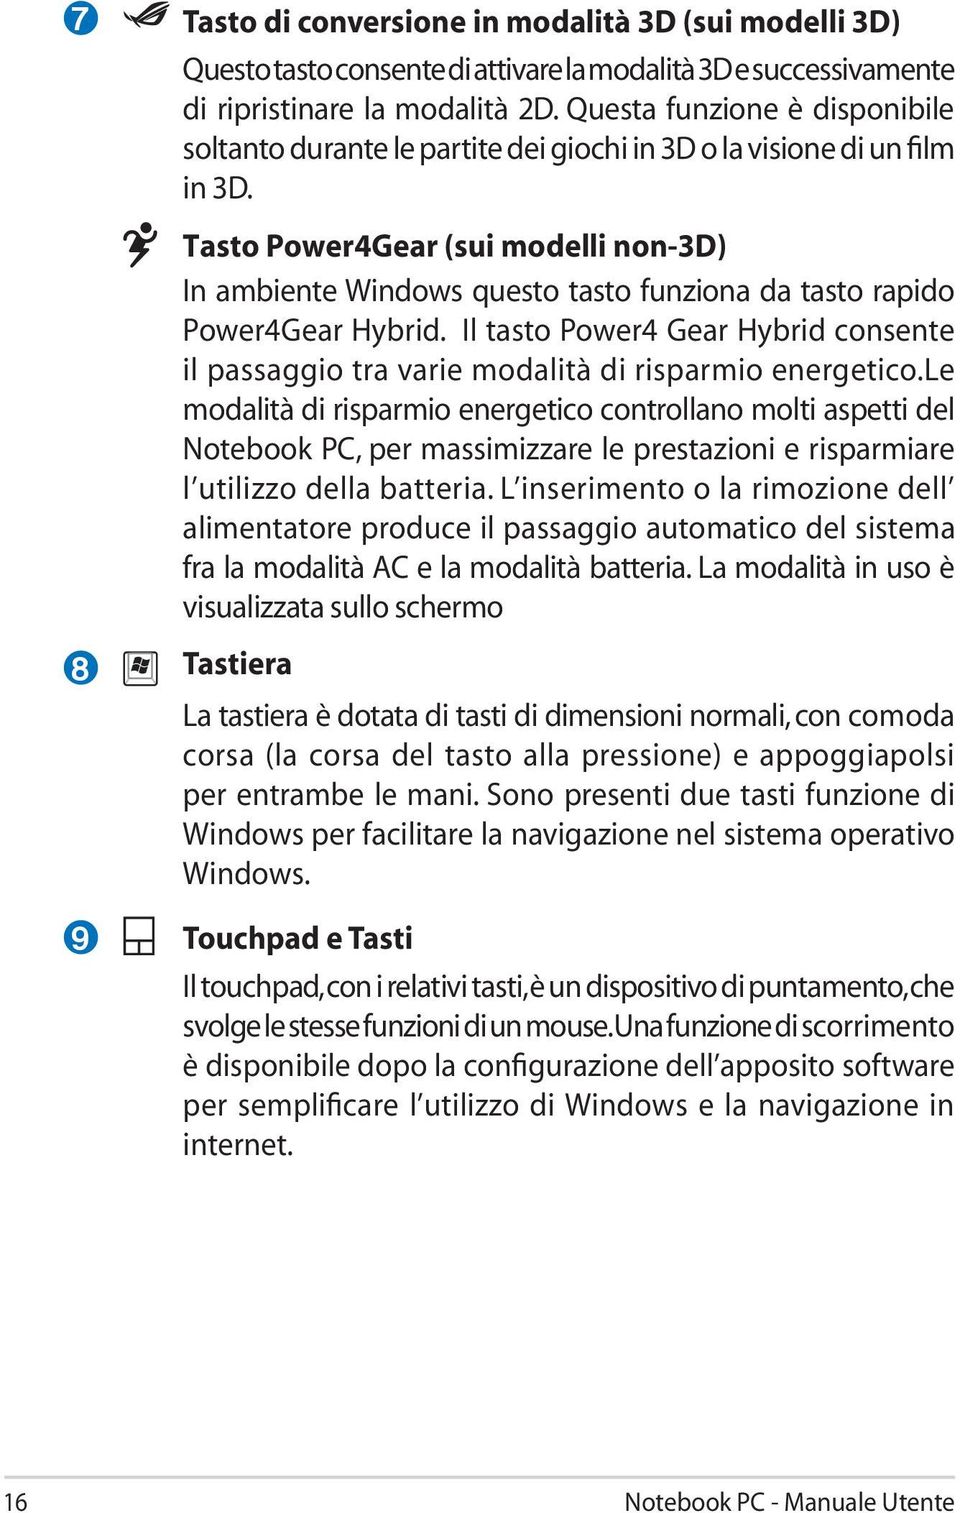 Tasto Power4Gear (sui modelli non-3d) In ambiente Windows questo tasto funziona da tasto rapido Power4Gear Hybrid.